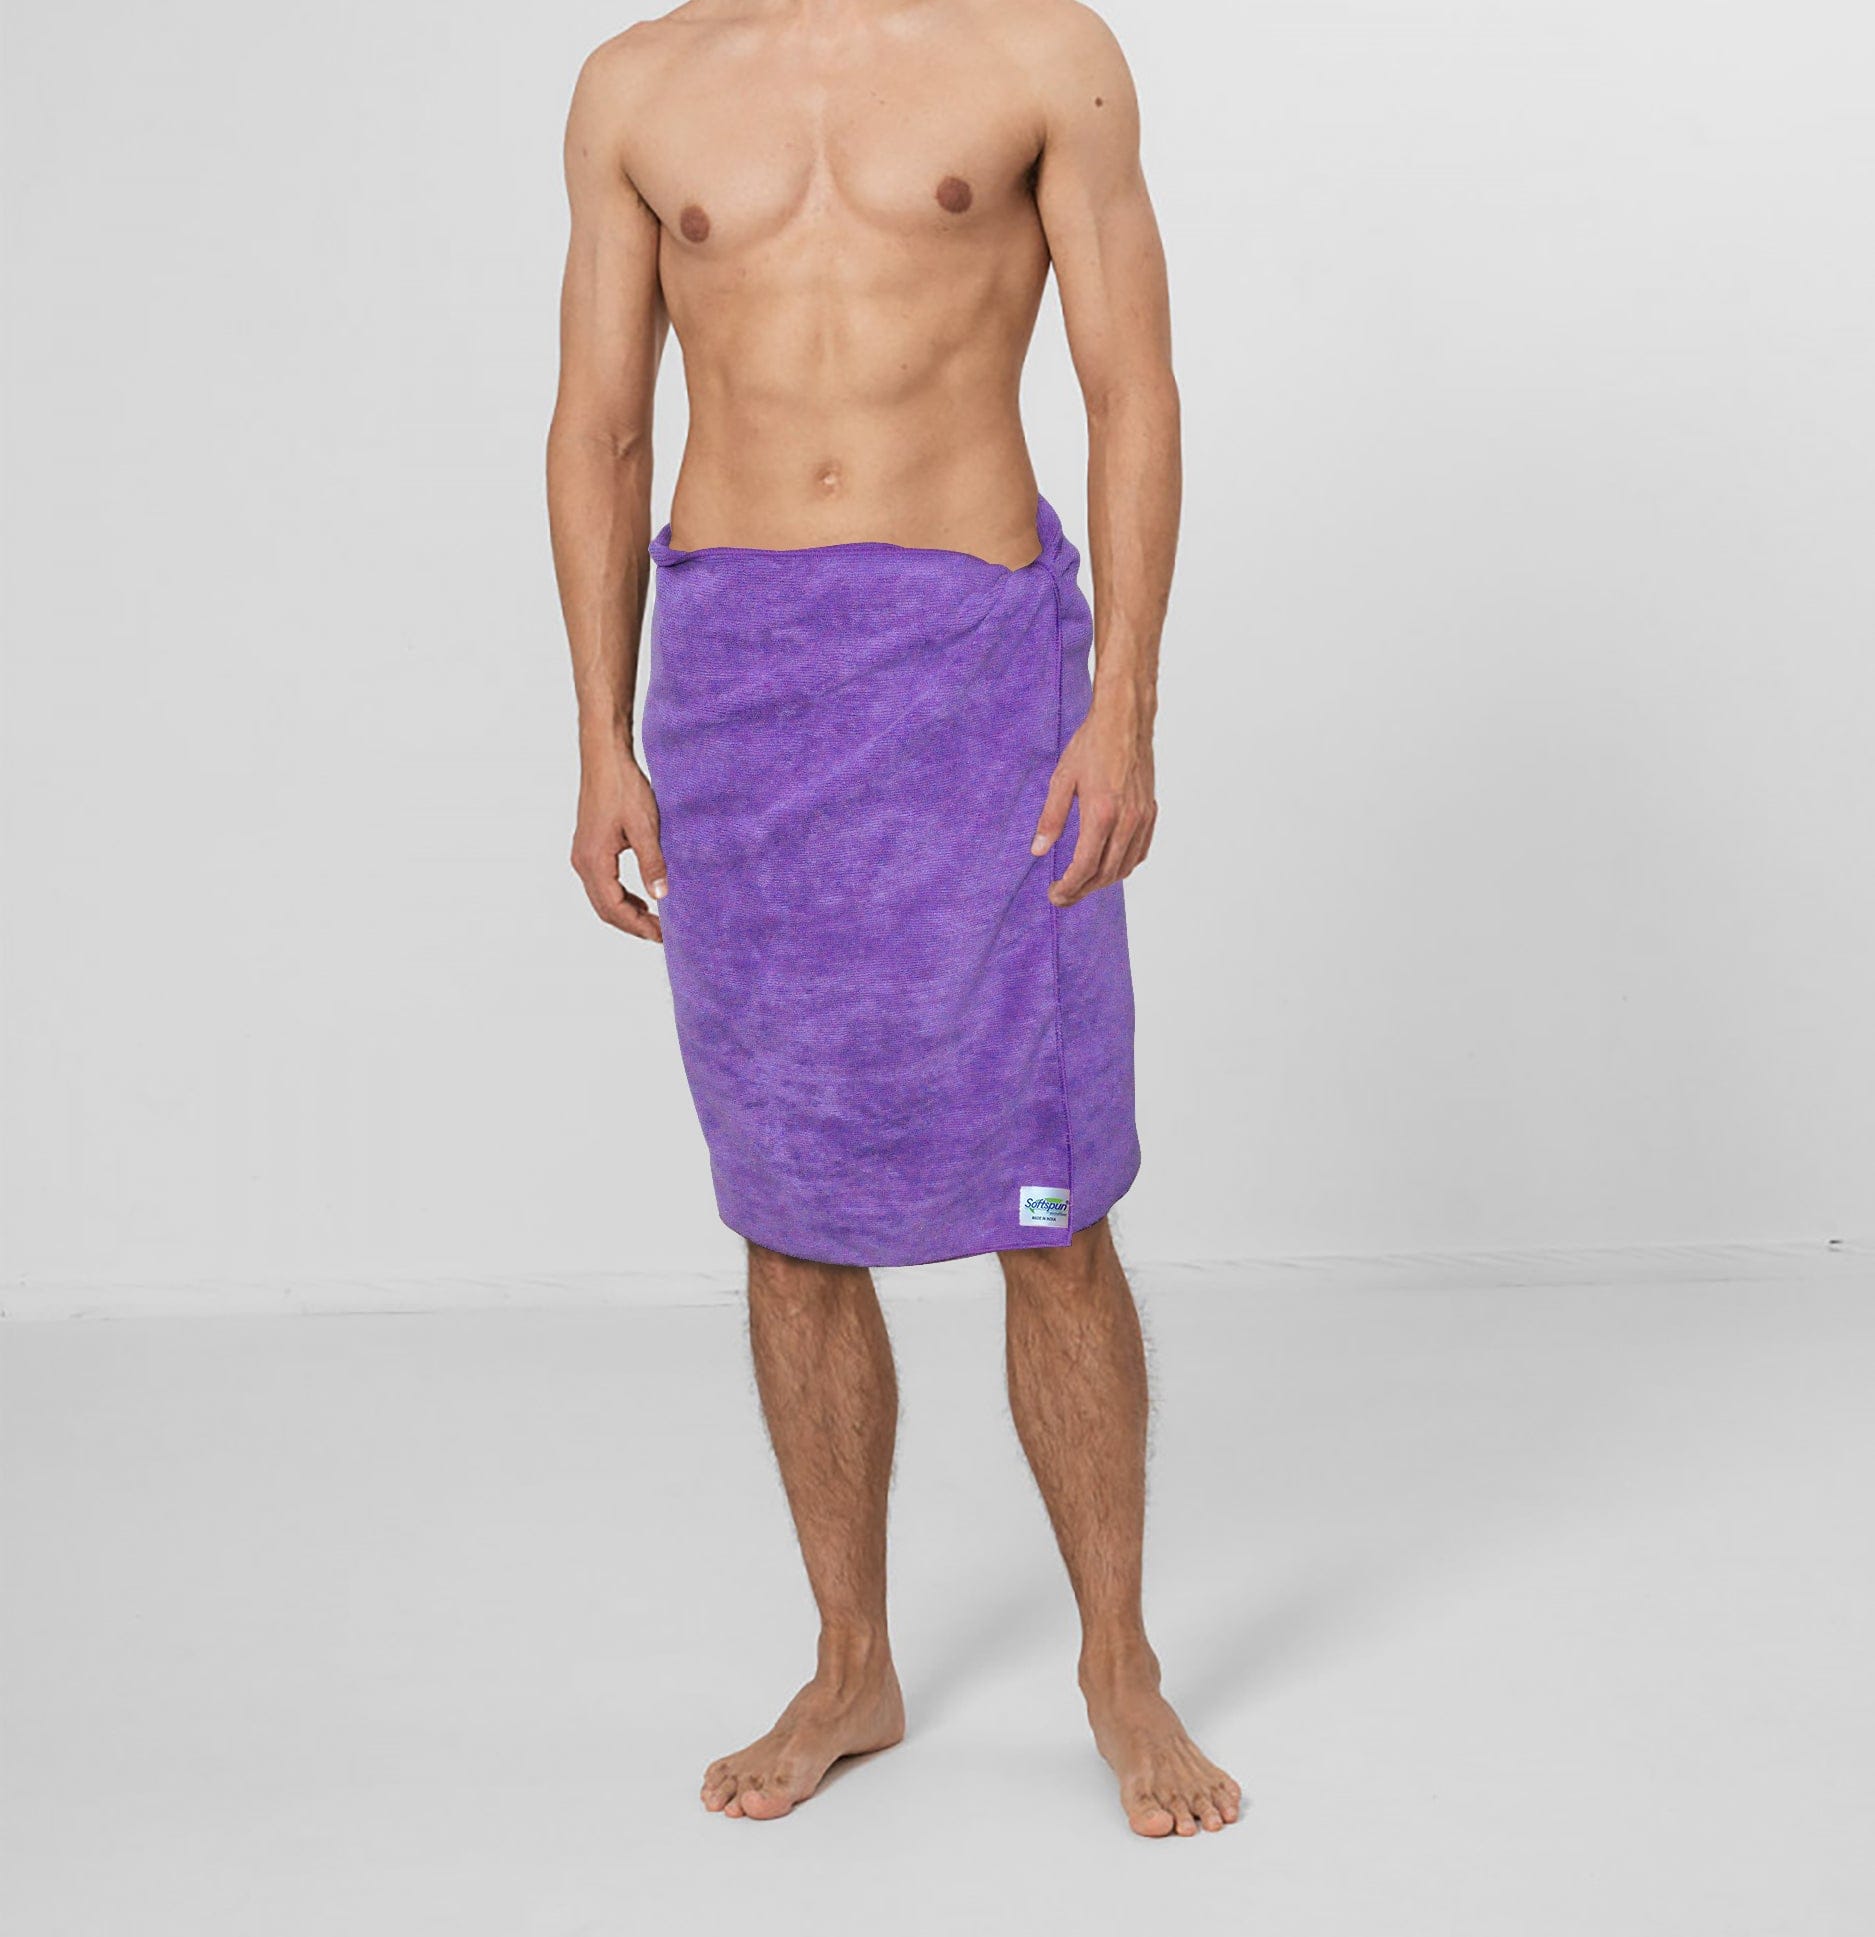 SOFTSPUN Microfiber Hair and Face Care Towel Set of 1 Piece, 340